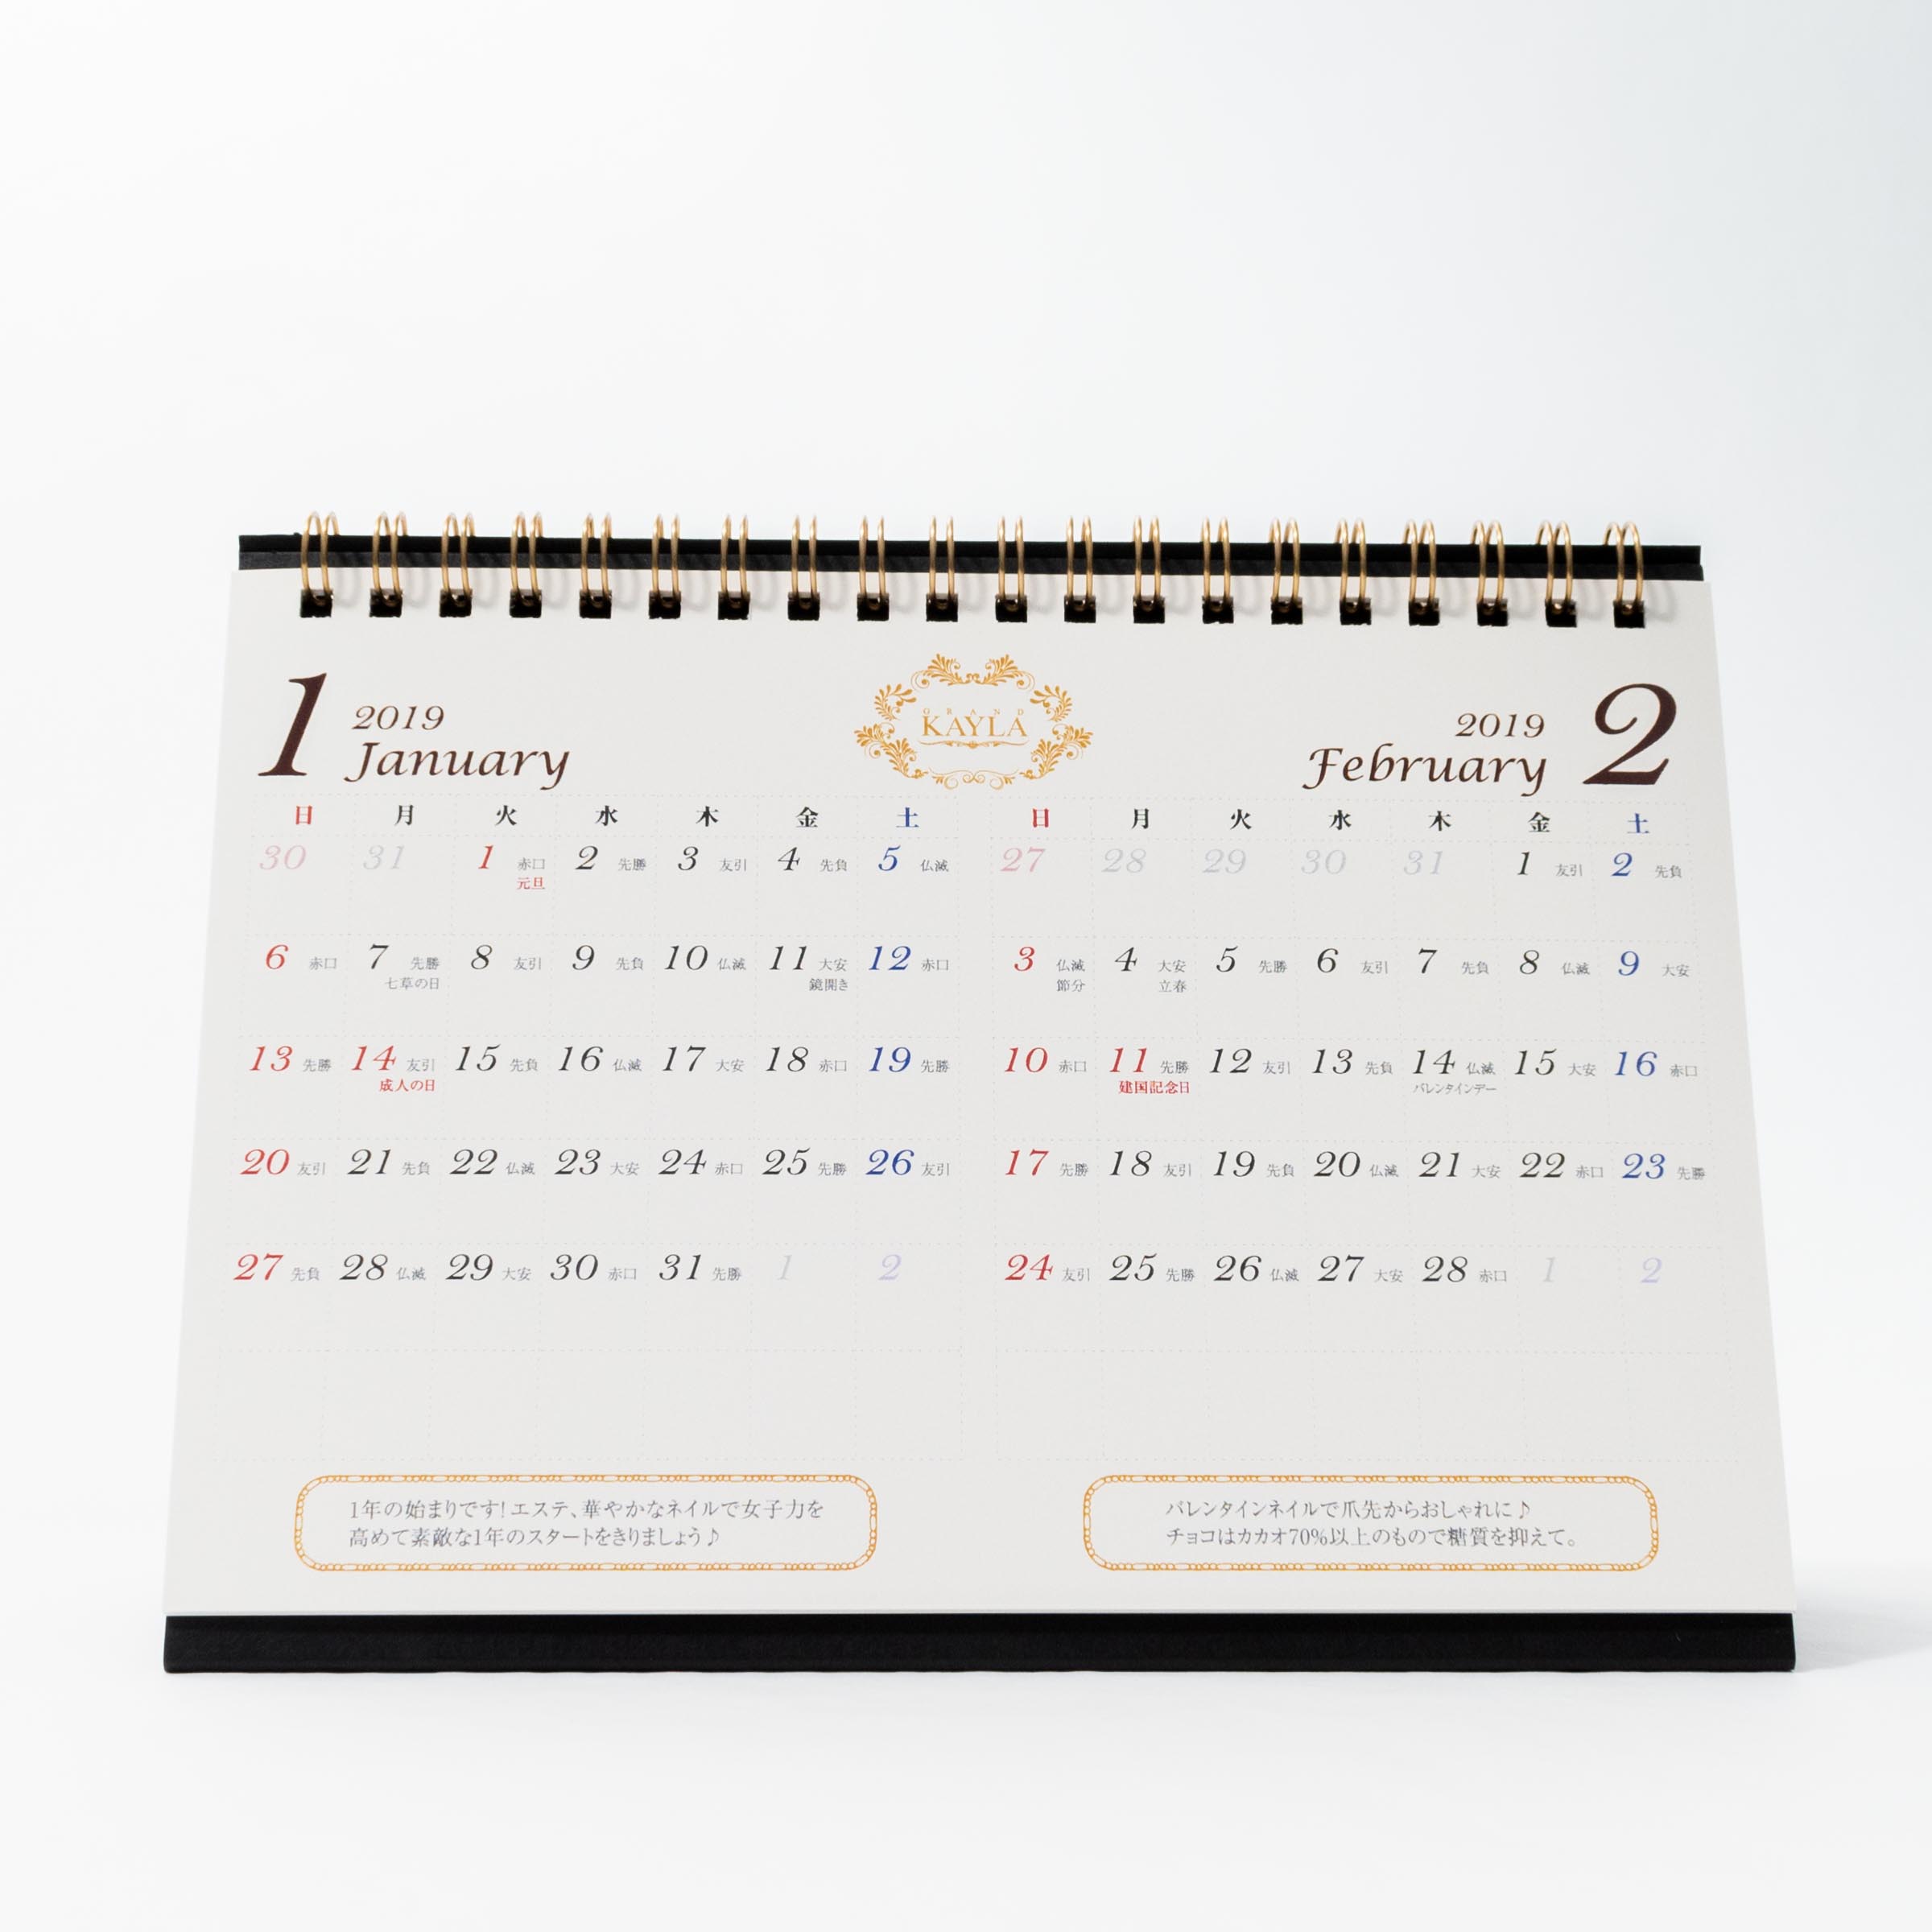 「株式会社サラシア 様」製作のオリジナルカレンダー ギャラリー写真2